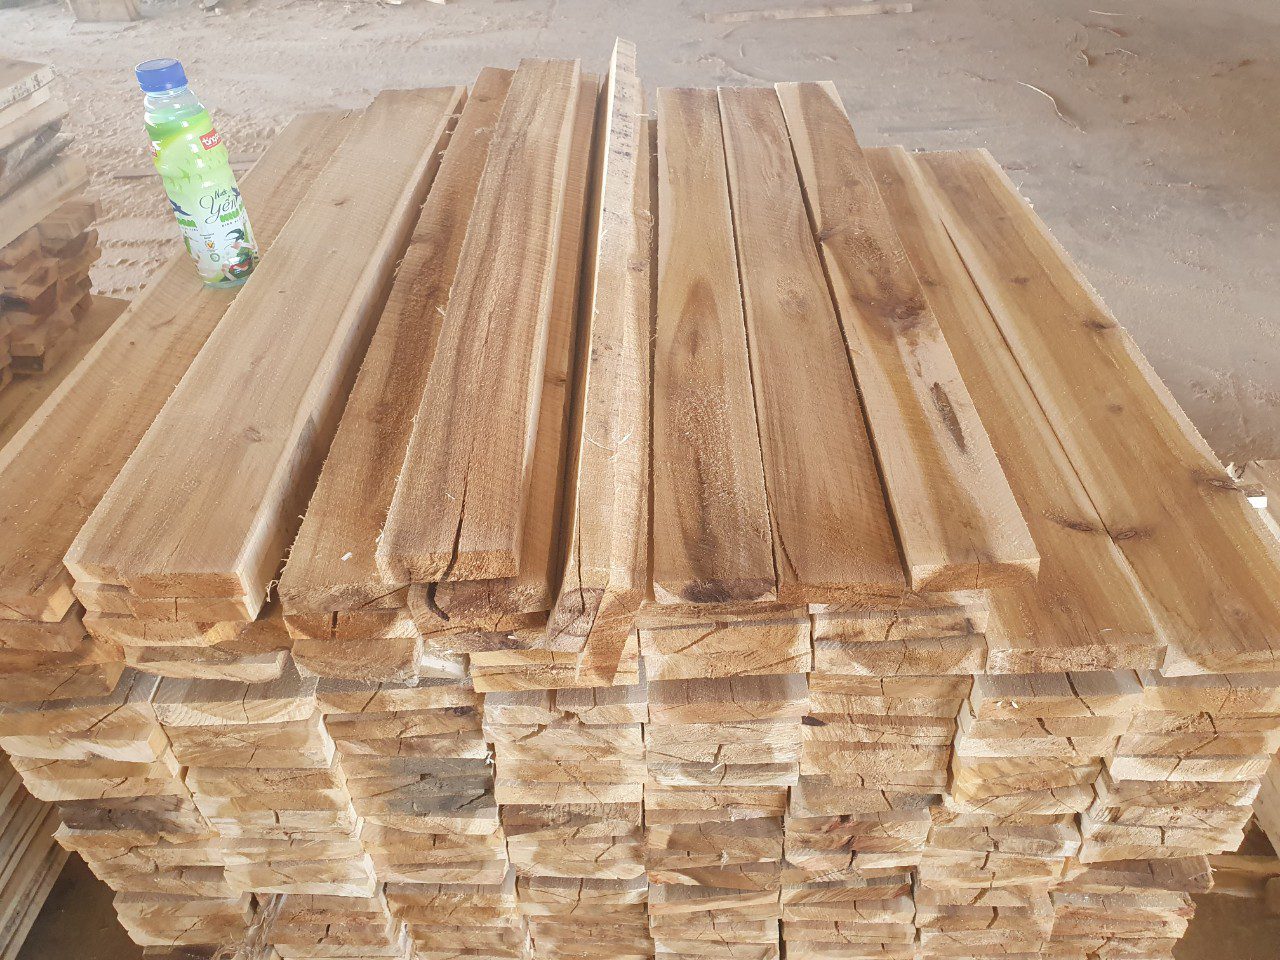 Đơn hàng xuất khẩu gỗ keo xẻ sang thị trường Saudi Arabia GK02-070921